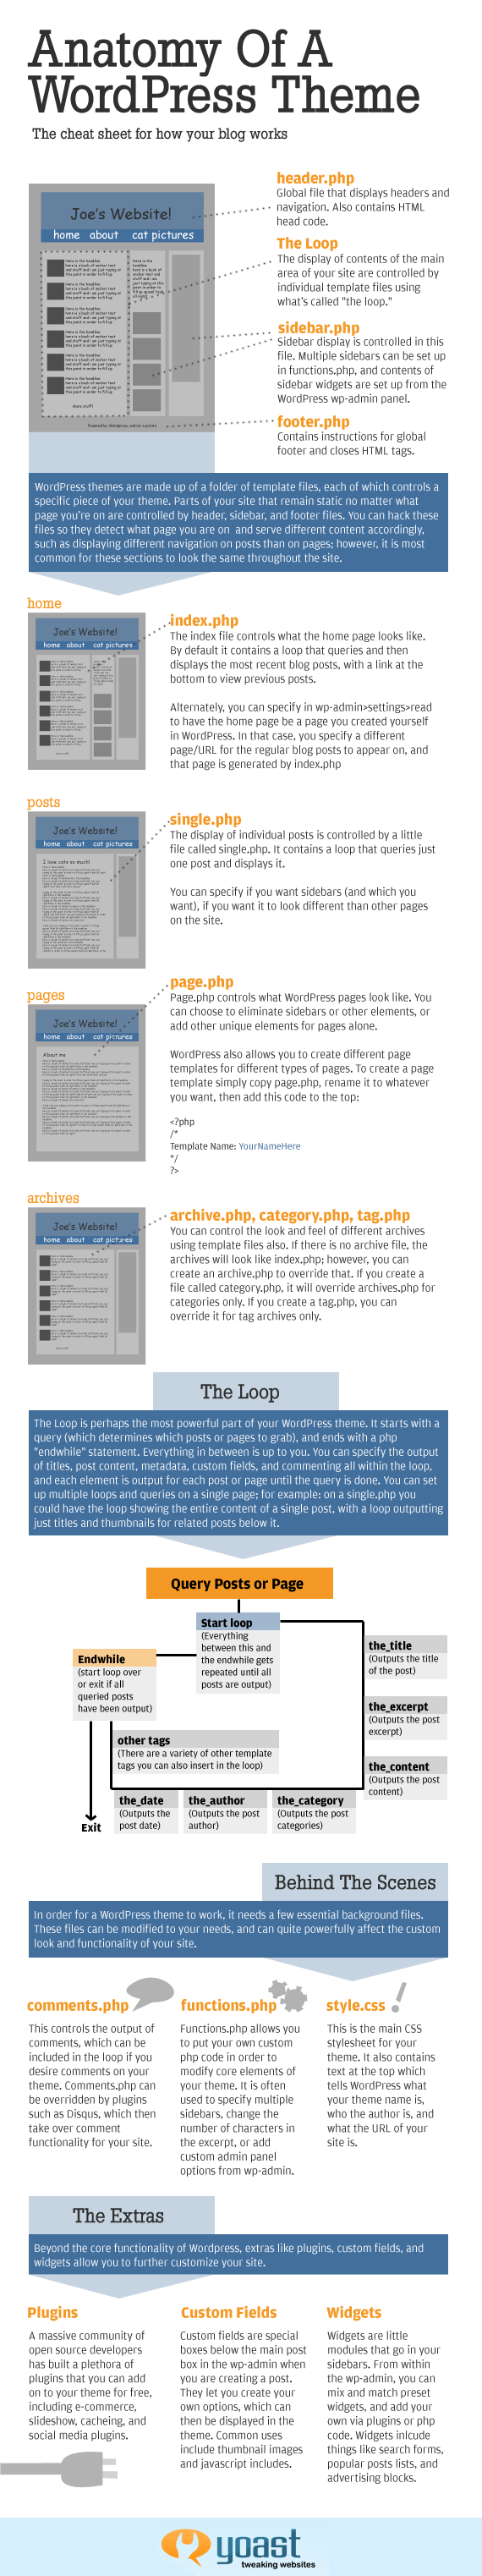 Anatomía de un theme de Wordpress [Infografía] 1